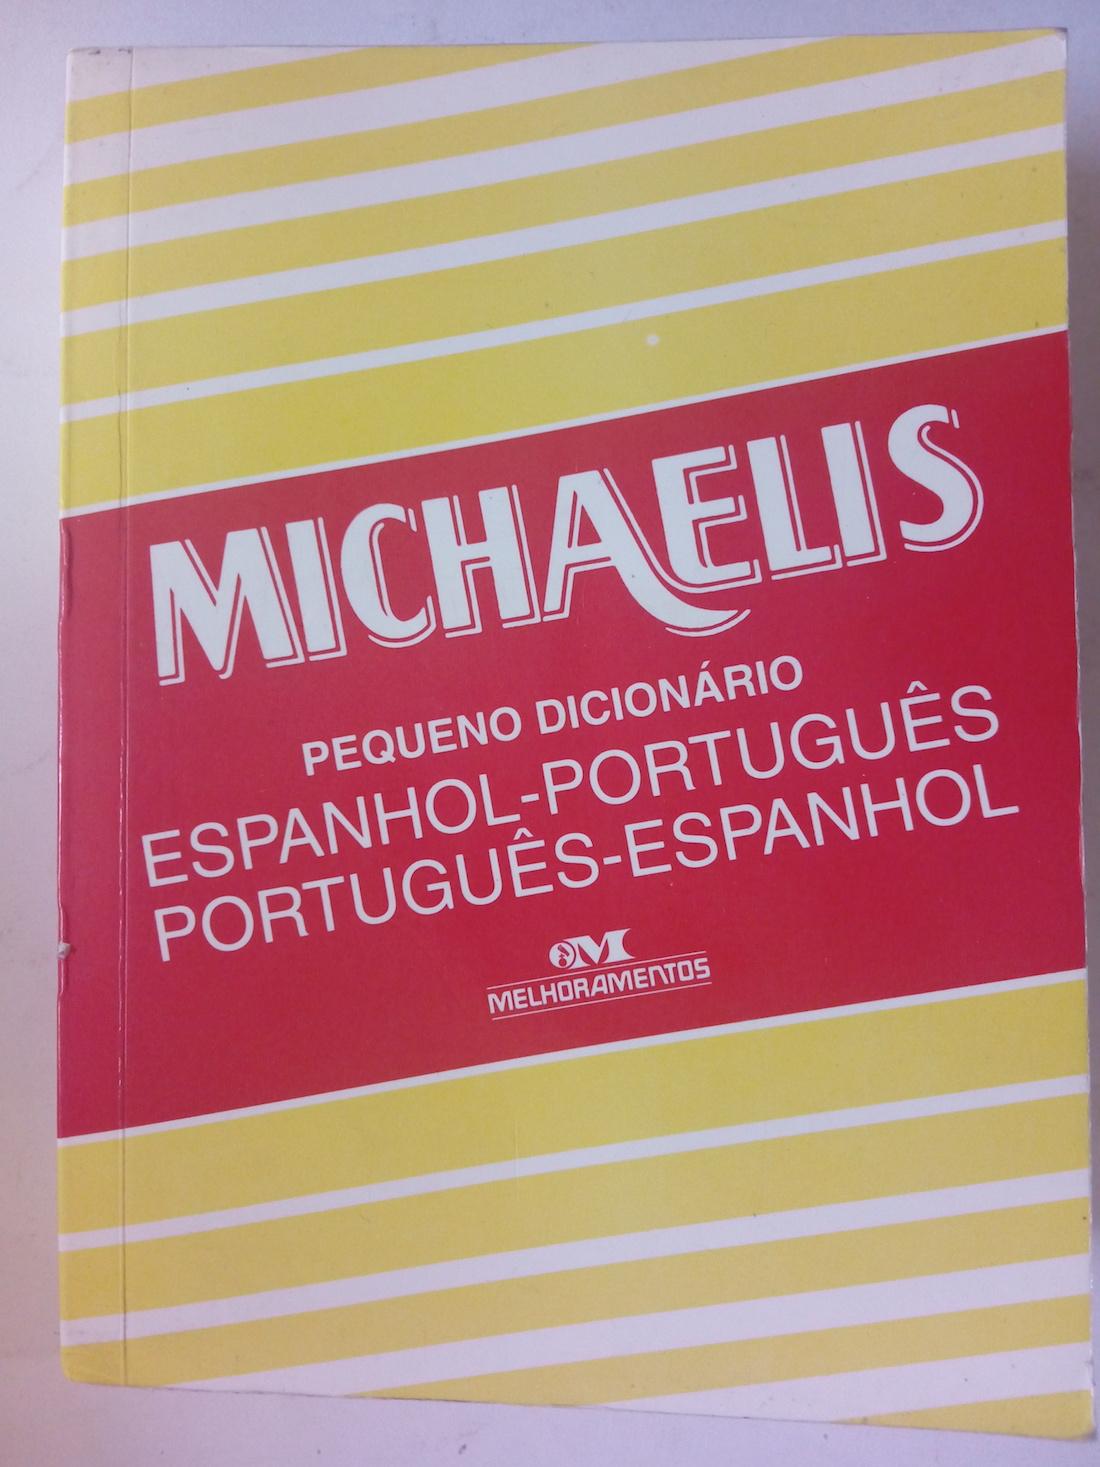 Michaelis pequeno dicionário espanhol-português português-espanhol - Helena B.C. Pereira